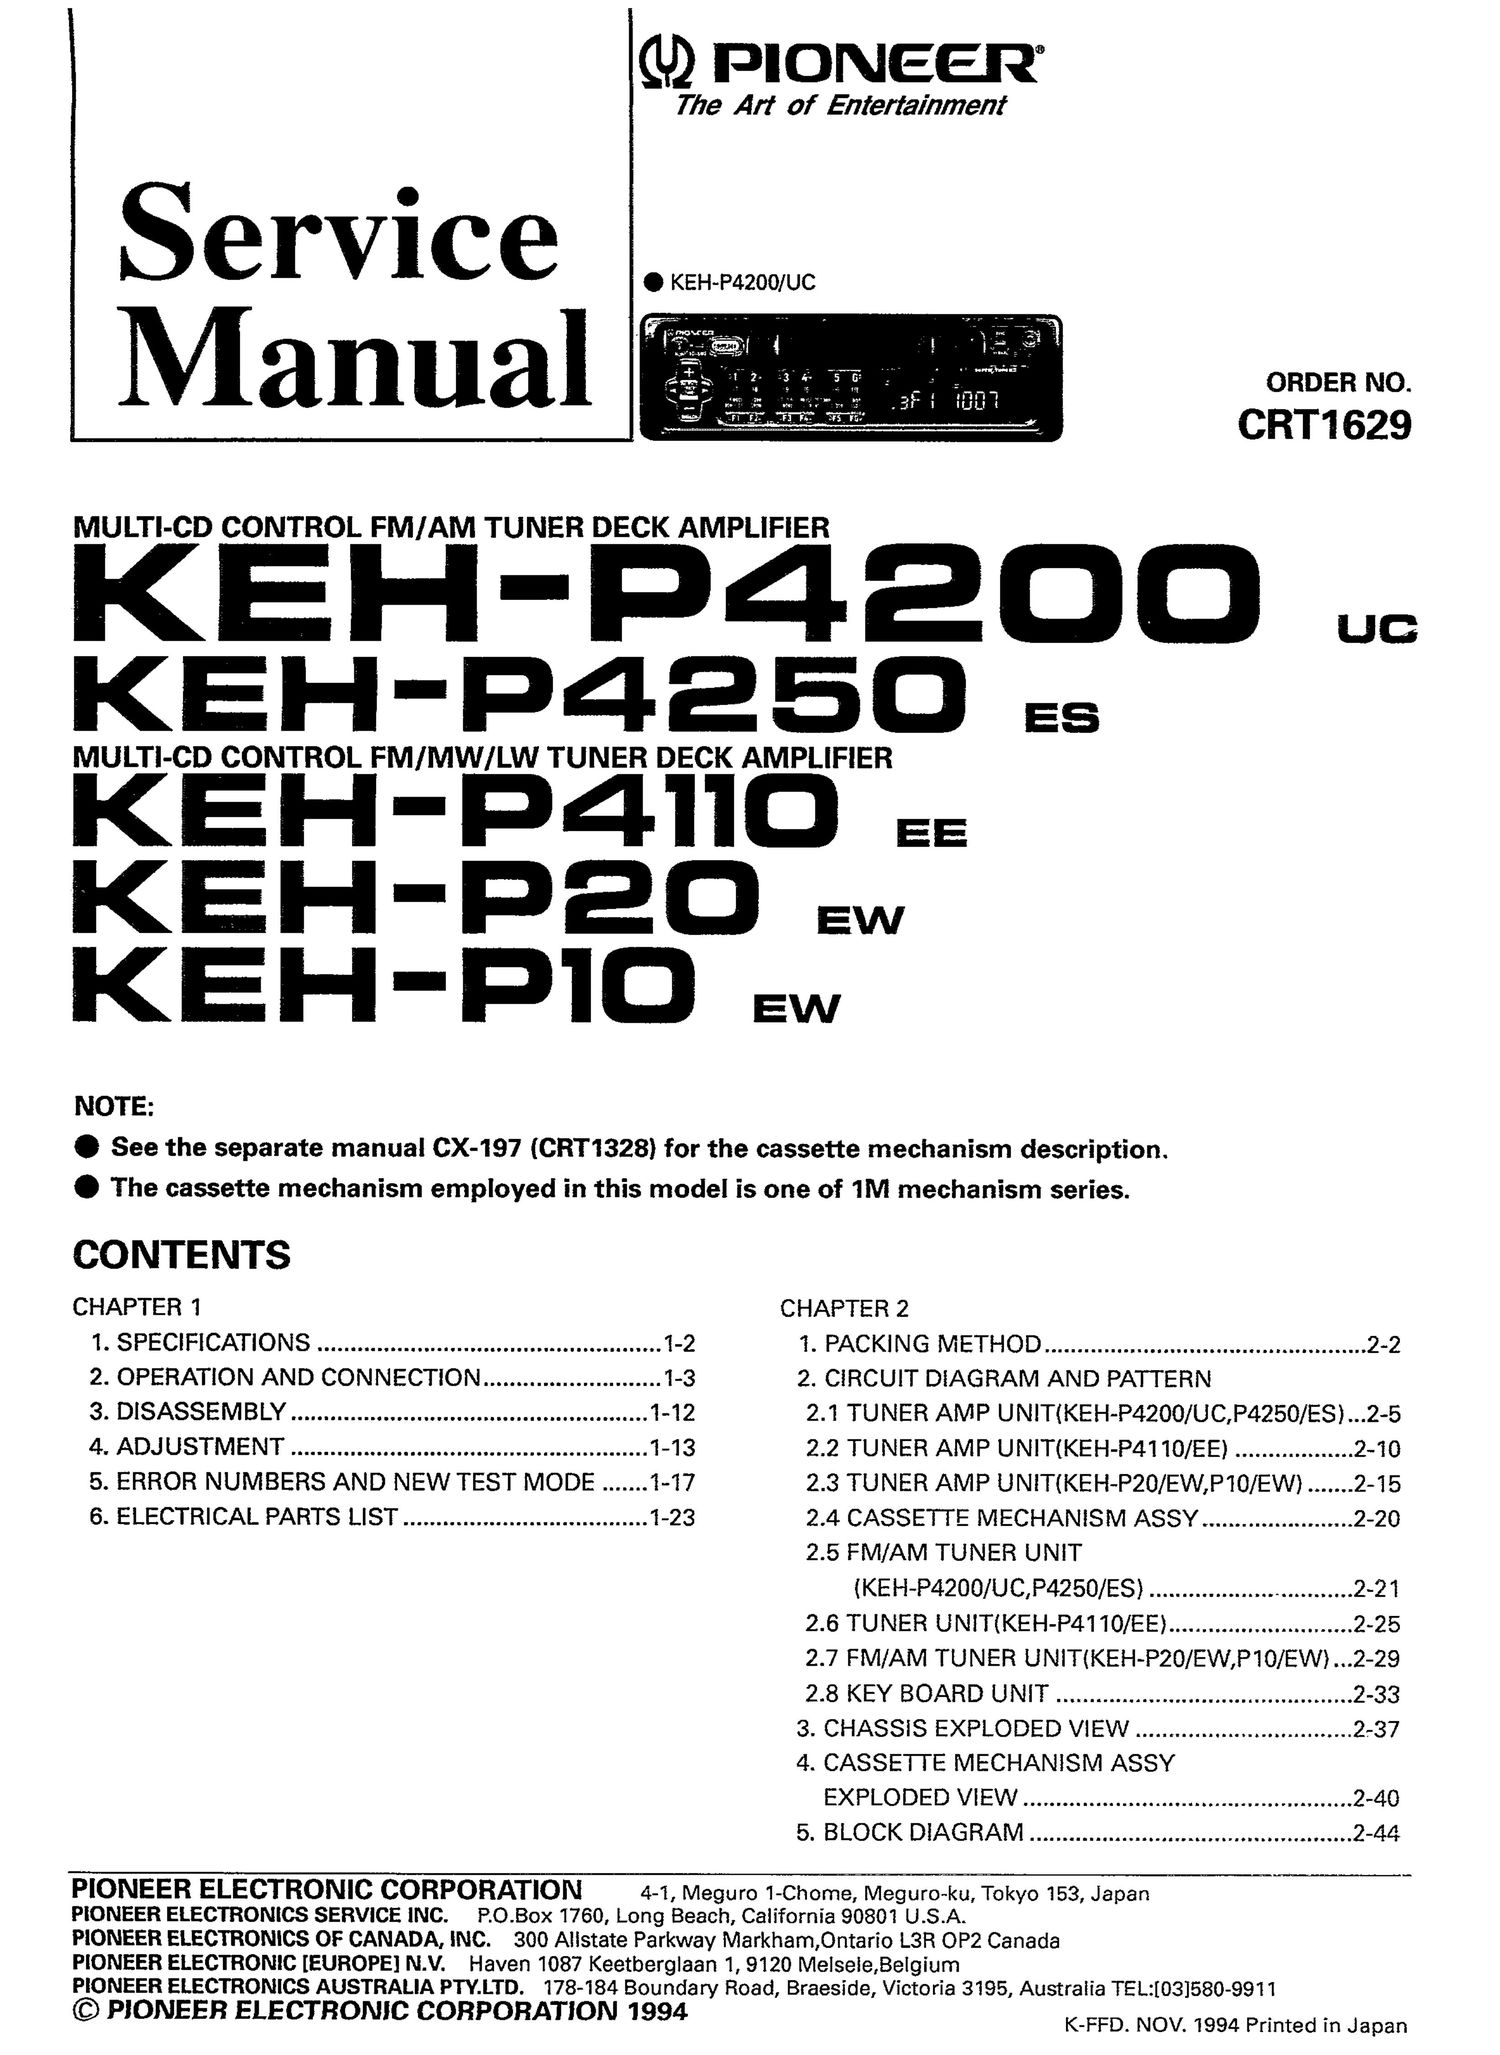 pioneer kehp 4110 service manual